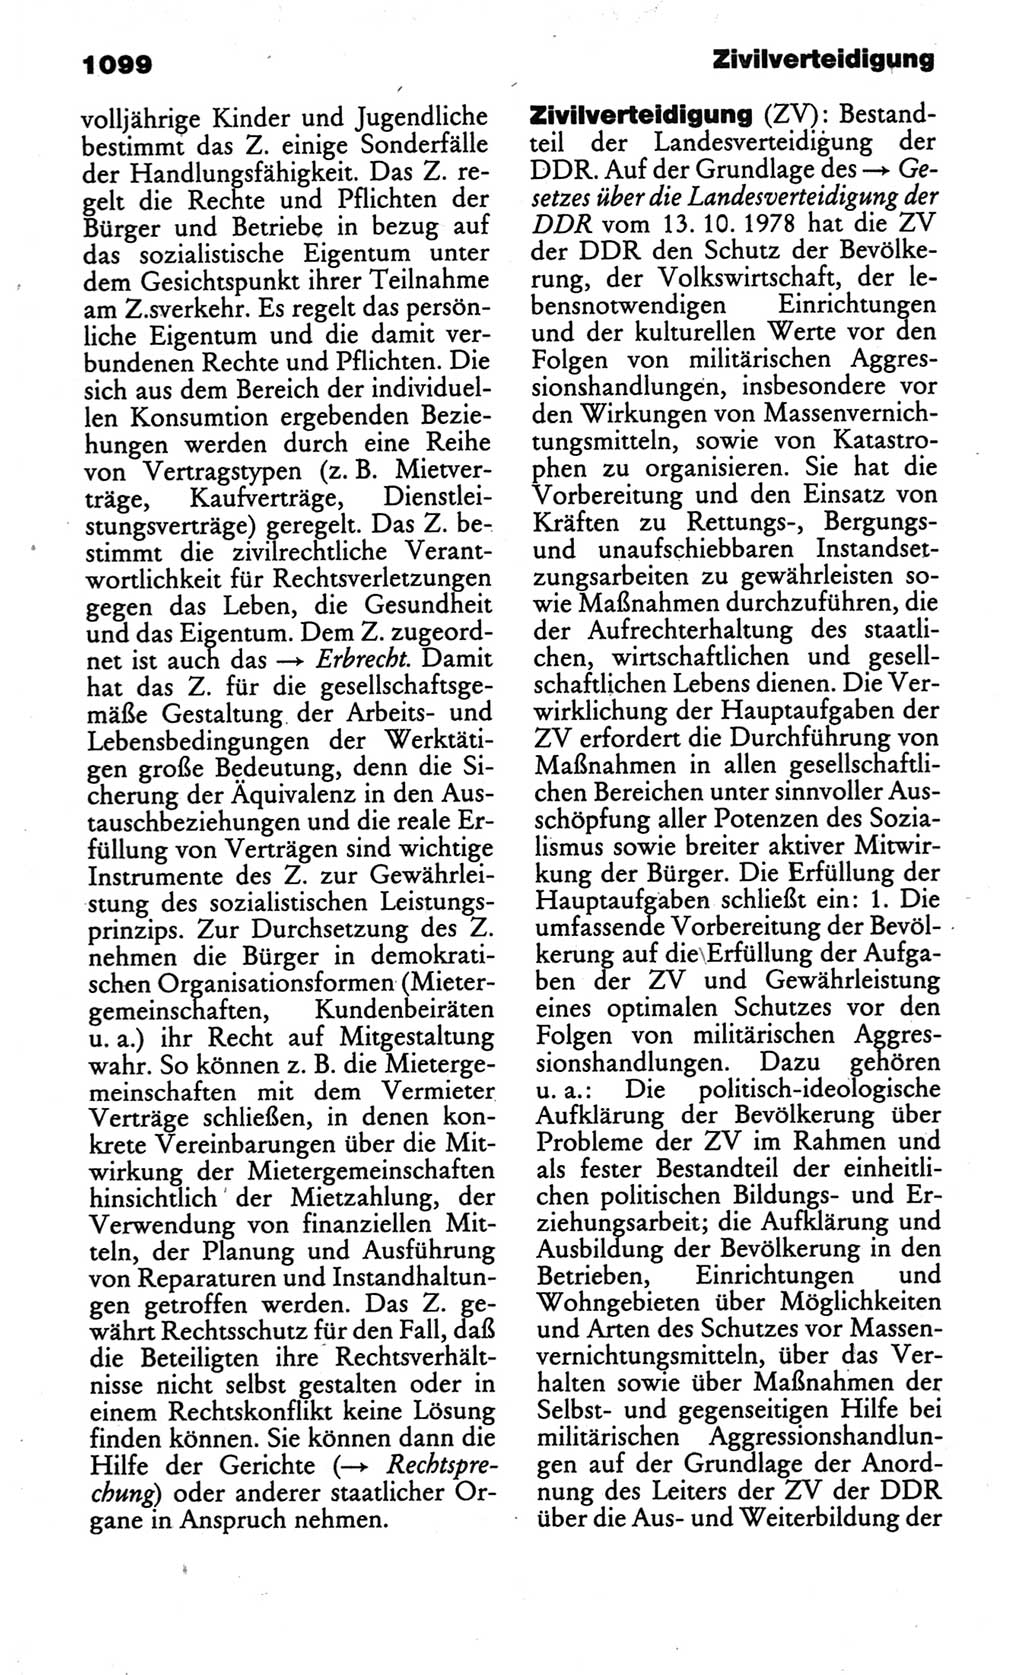 Kleines politisches Wörterbuch [Deutsche Demokratische Republik (DDR)] 1986, Seite 1099 (Kl. pol. Wb. DDR 1986, S. 1099)